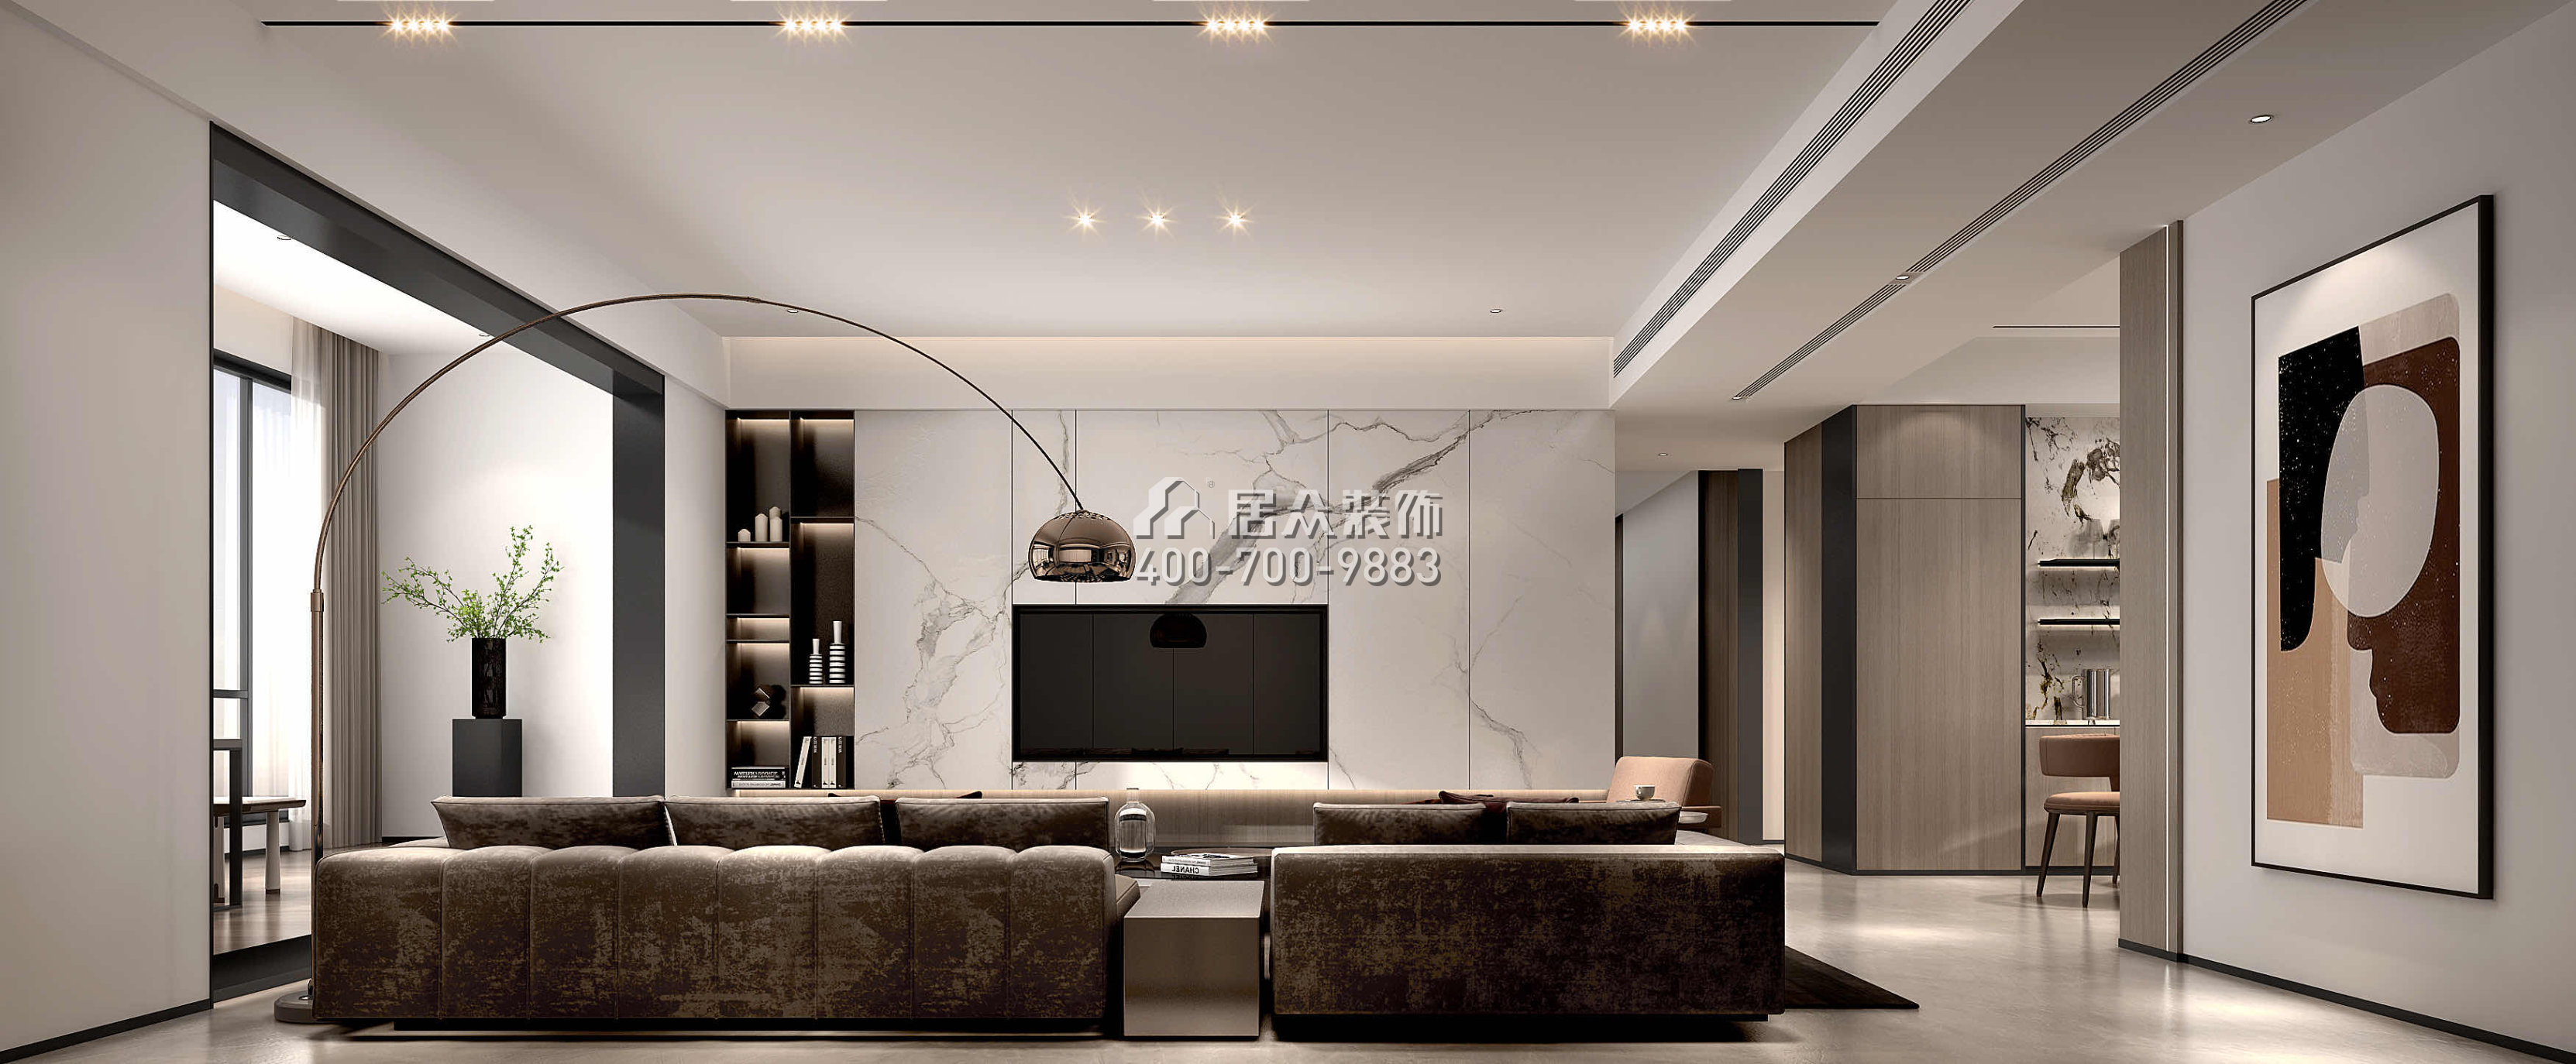 嘉华星际湾238平方米现代简约风格平层户型客厅装修效果图